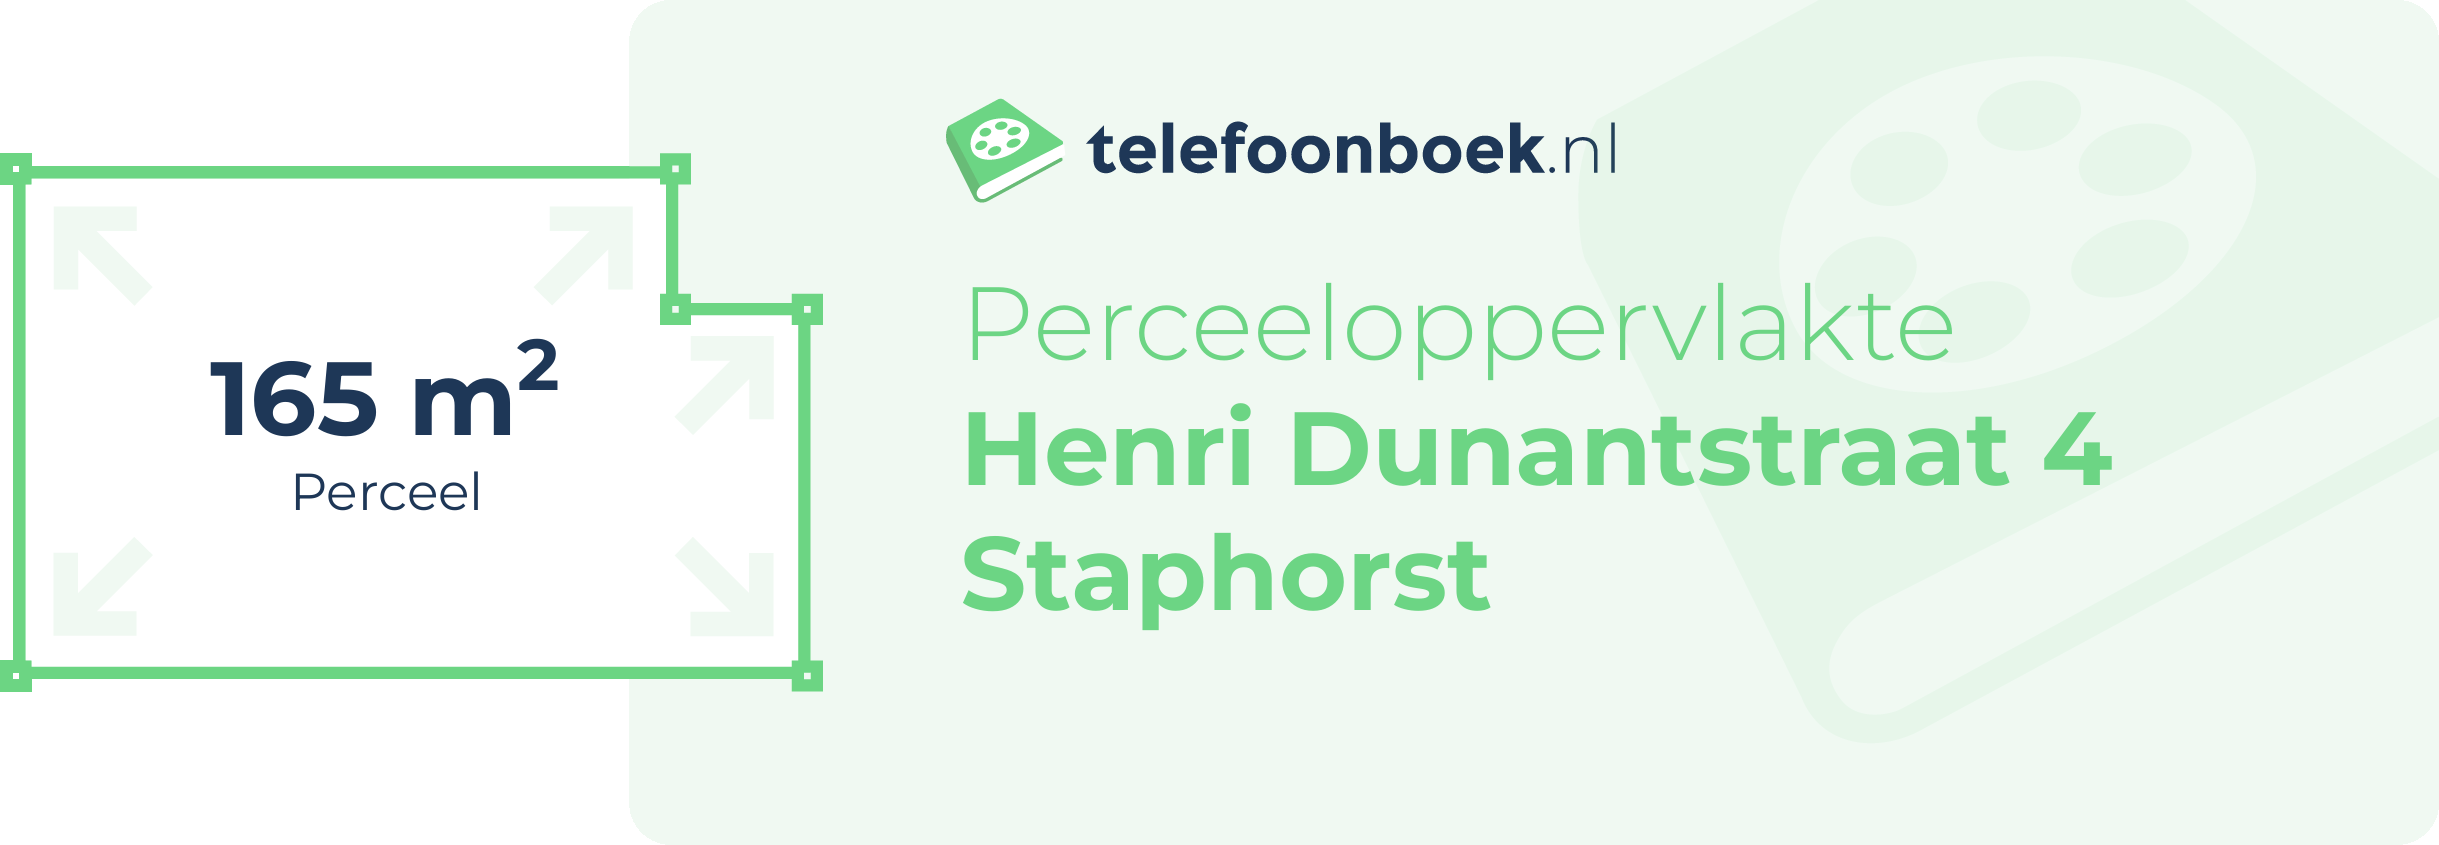 Perceeloppervlakte Henri Dunantstraat 4 Staphorst